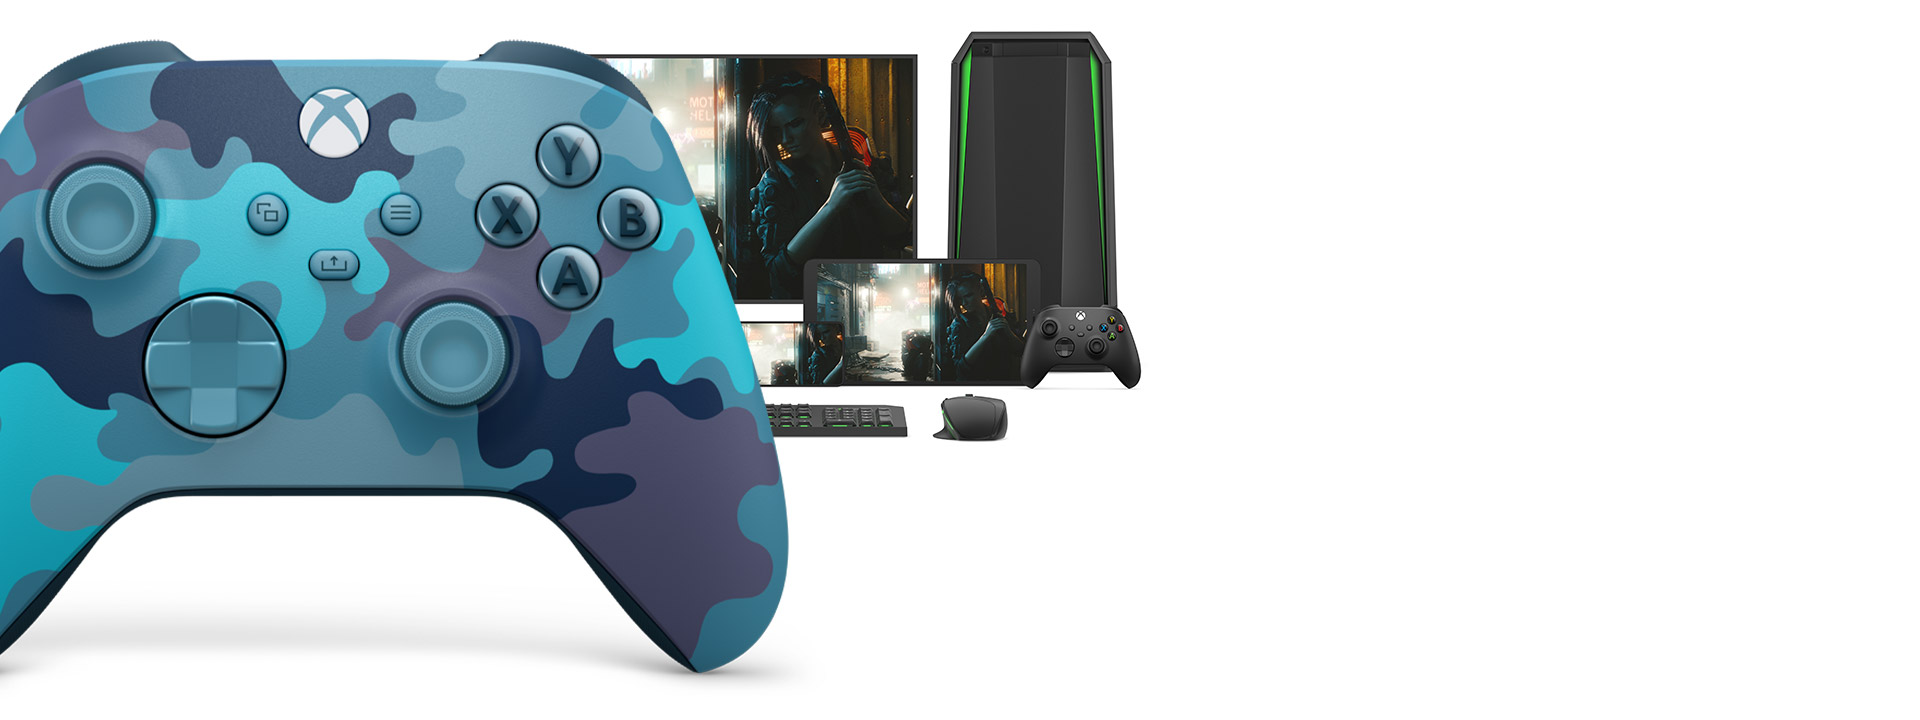 Control Inalámbrico Xbox: camuflaje mineral con una computadora, TV y Xbox Series S